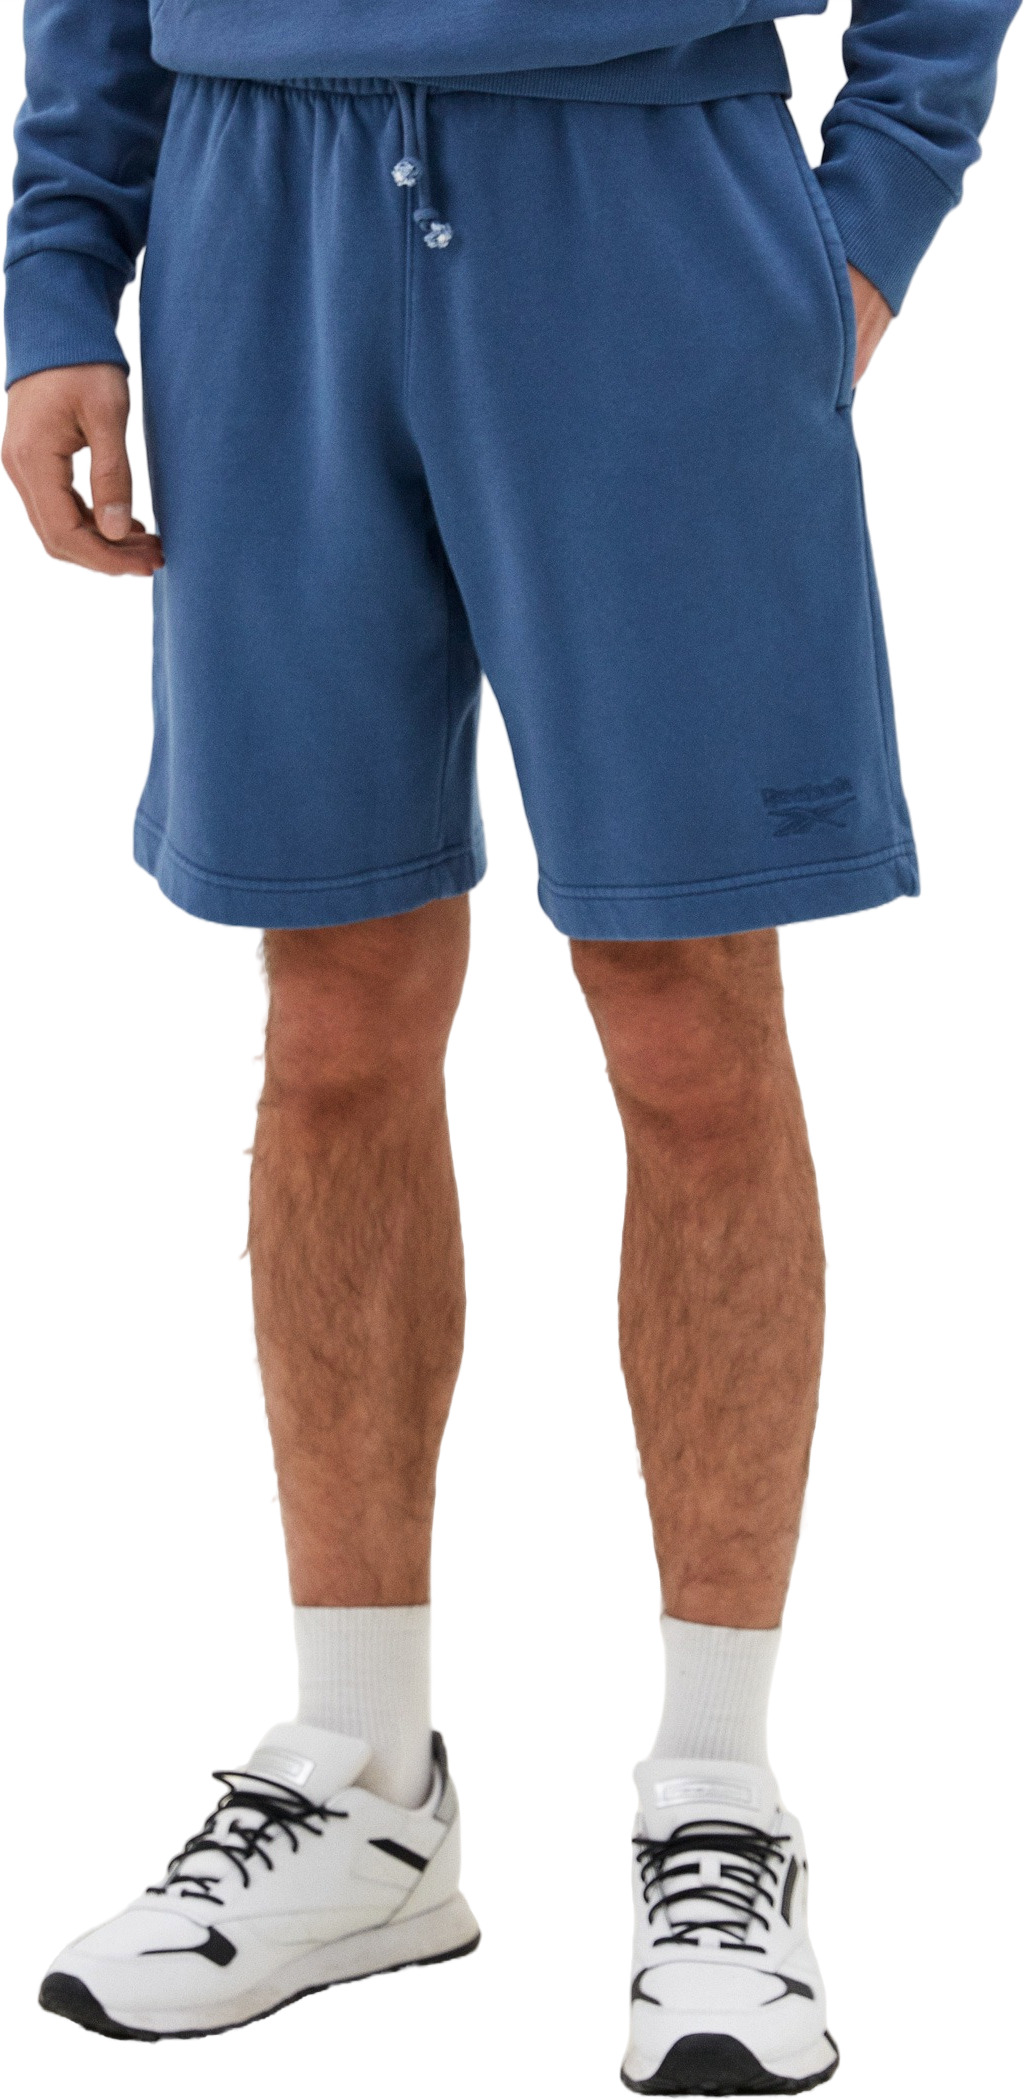 Трикотажные шорты мужские Reebok RI WASHED SHORT синие L